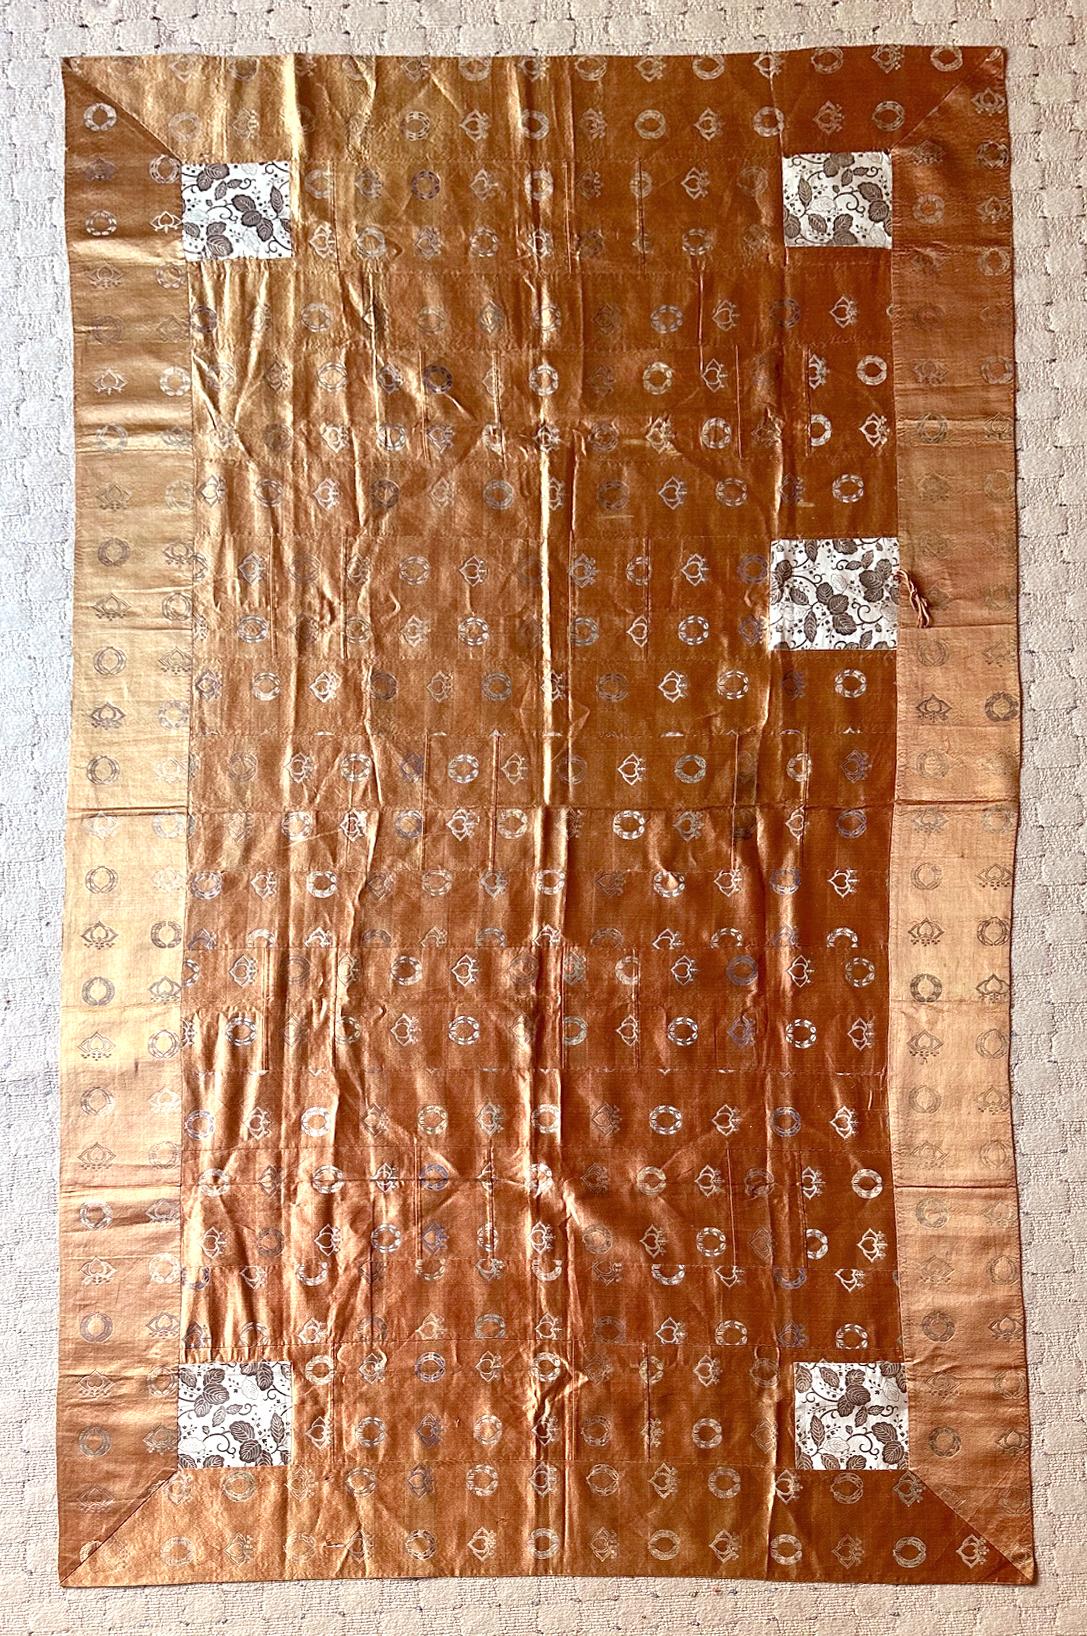 Un Kesa (vêtement de moine) japonais composé de treize colonnes de patchworks d'un fin tissu de soie chatoyant de couleur orange saumoné, dont la teinte change subtilement sous différents angles de lumière. Les broderies fines et délicates de deux